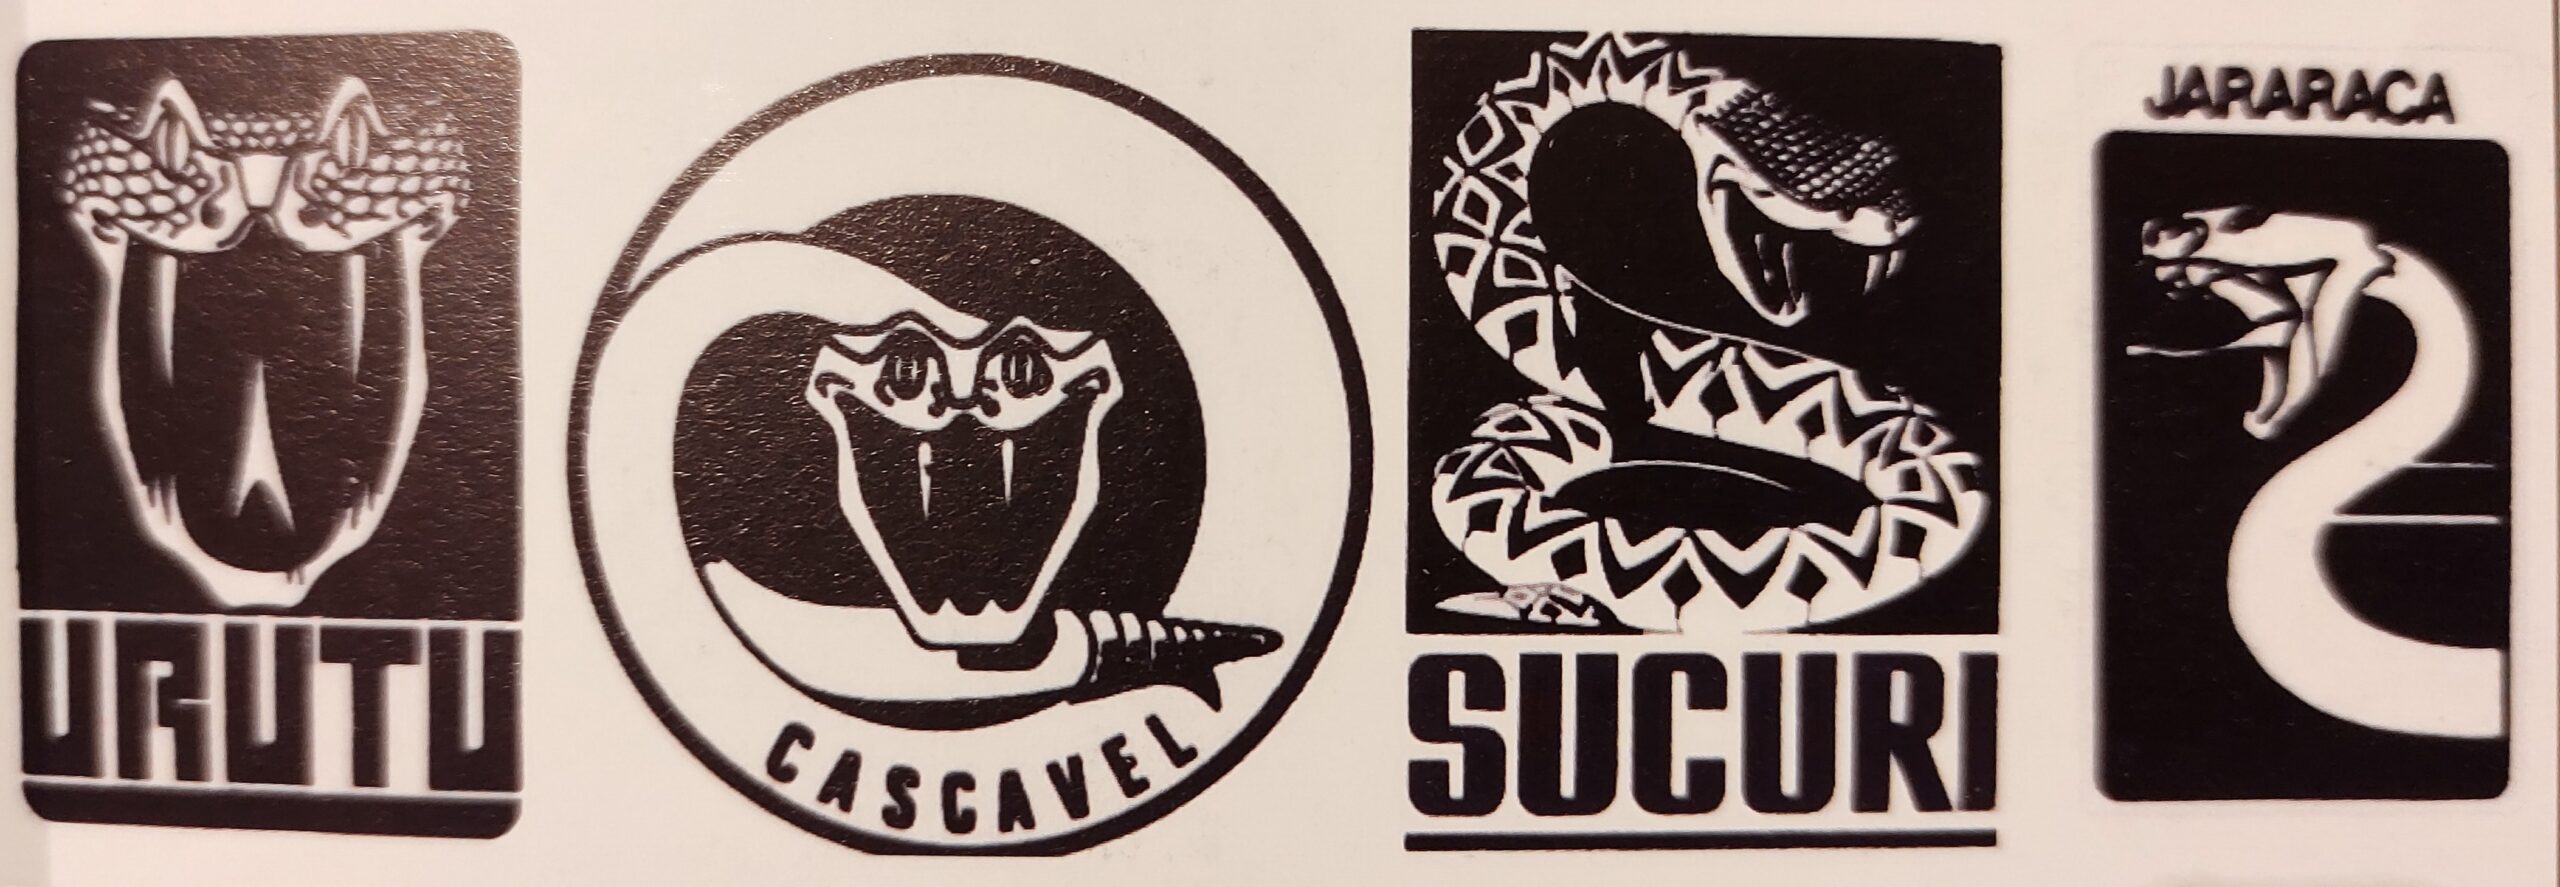 Os logos de cobras dos blindados brasileiros 